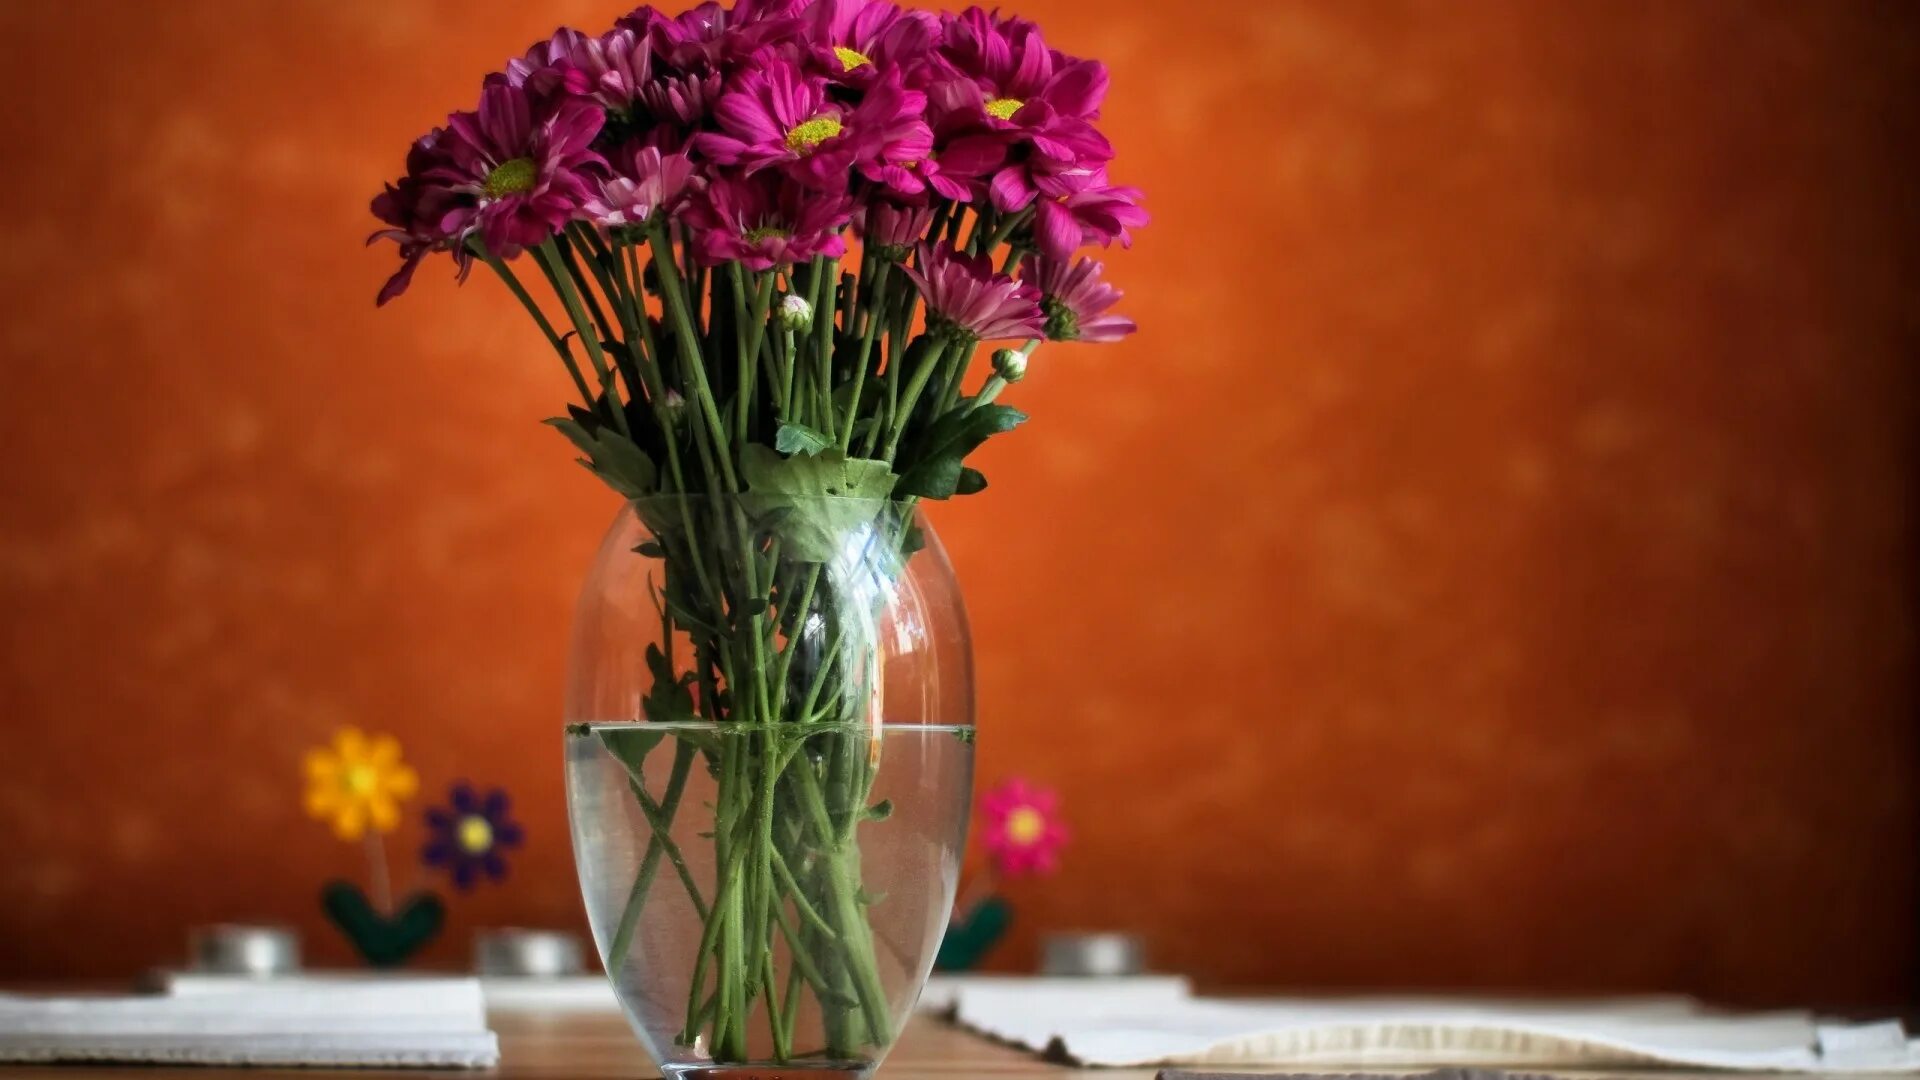 Картинка с цветами на столе. Цветы в вазе. Ваза с цветком. Цветочки в вазе. Красивые цветы в вазах.